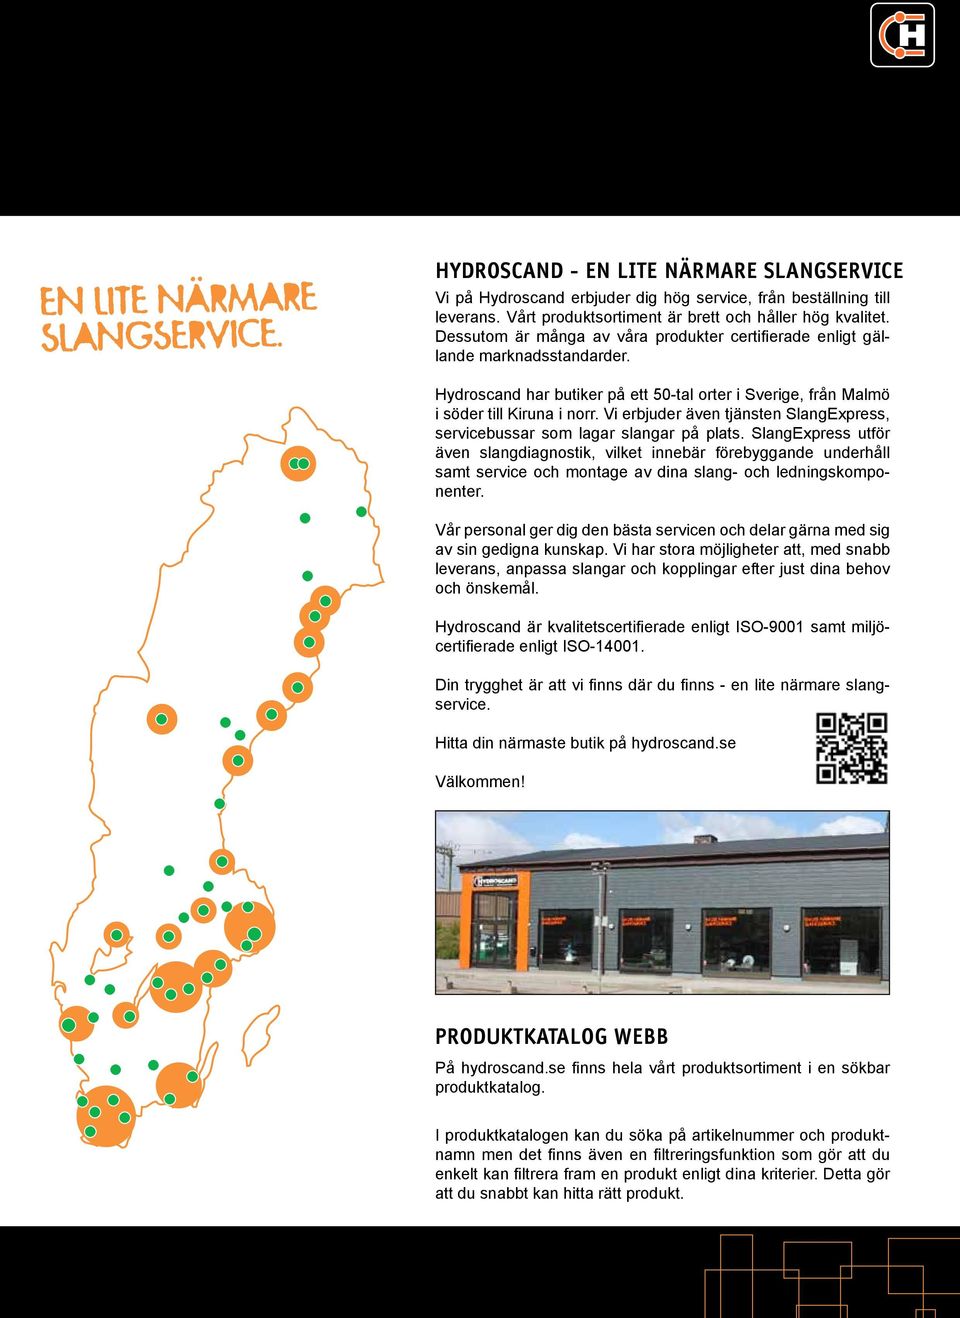 Hydroscand har butiker på ett 50-tal orter i Sverige, från Malmö i söder till Kiruna i norr. Vi erbjuder även tjänsten SlangExpress, servicebussar som lagar slangar på plats.